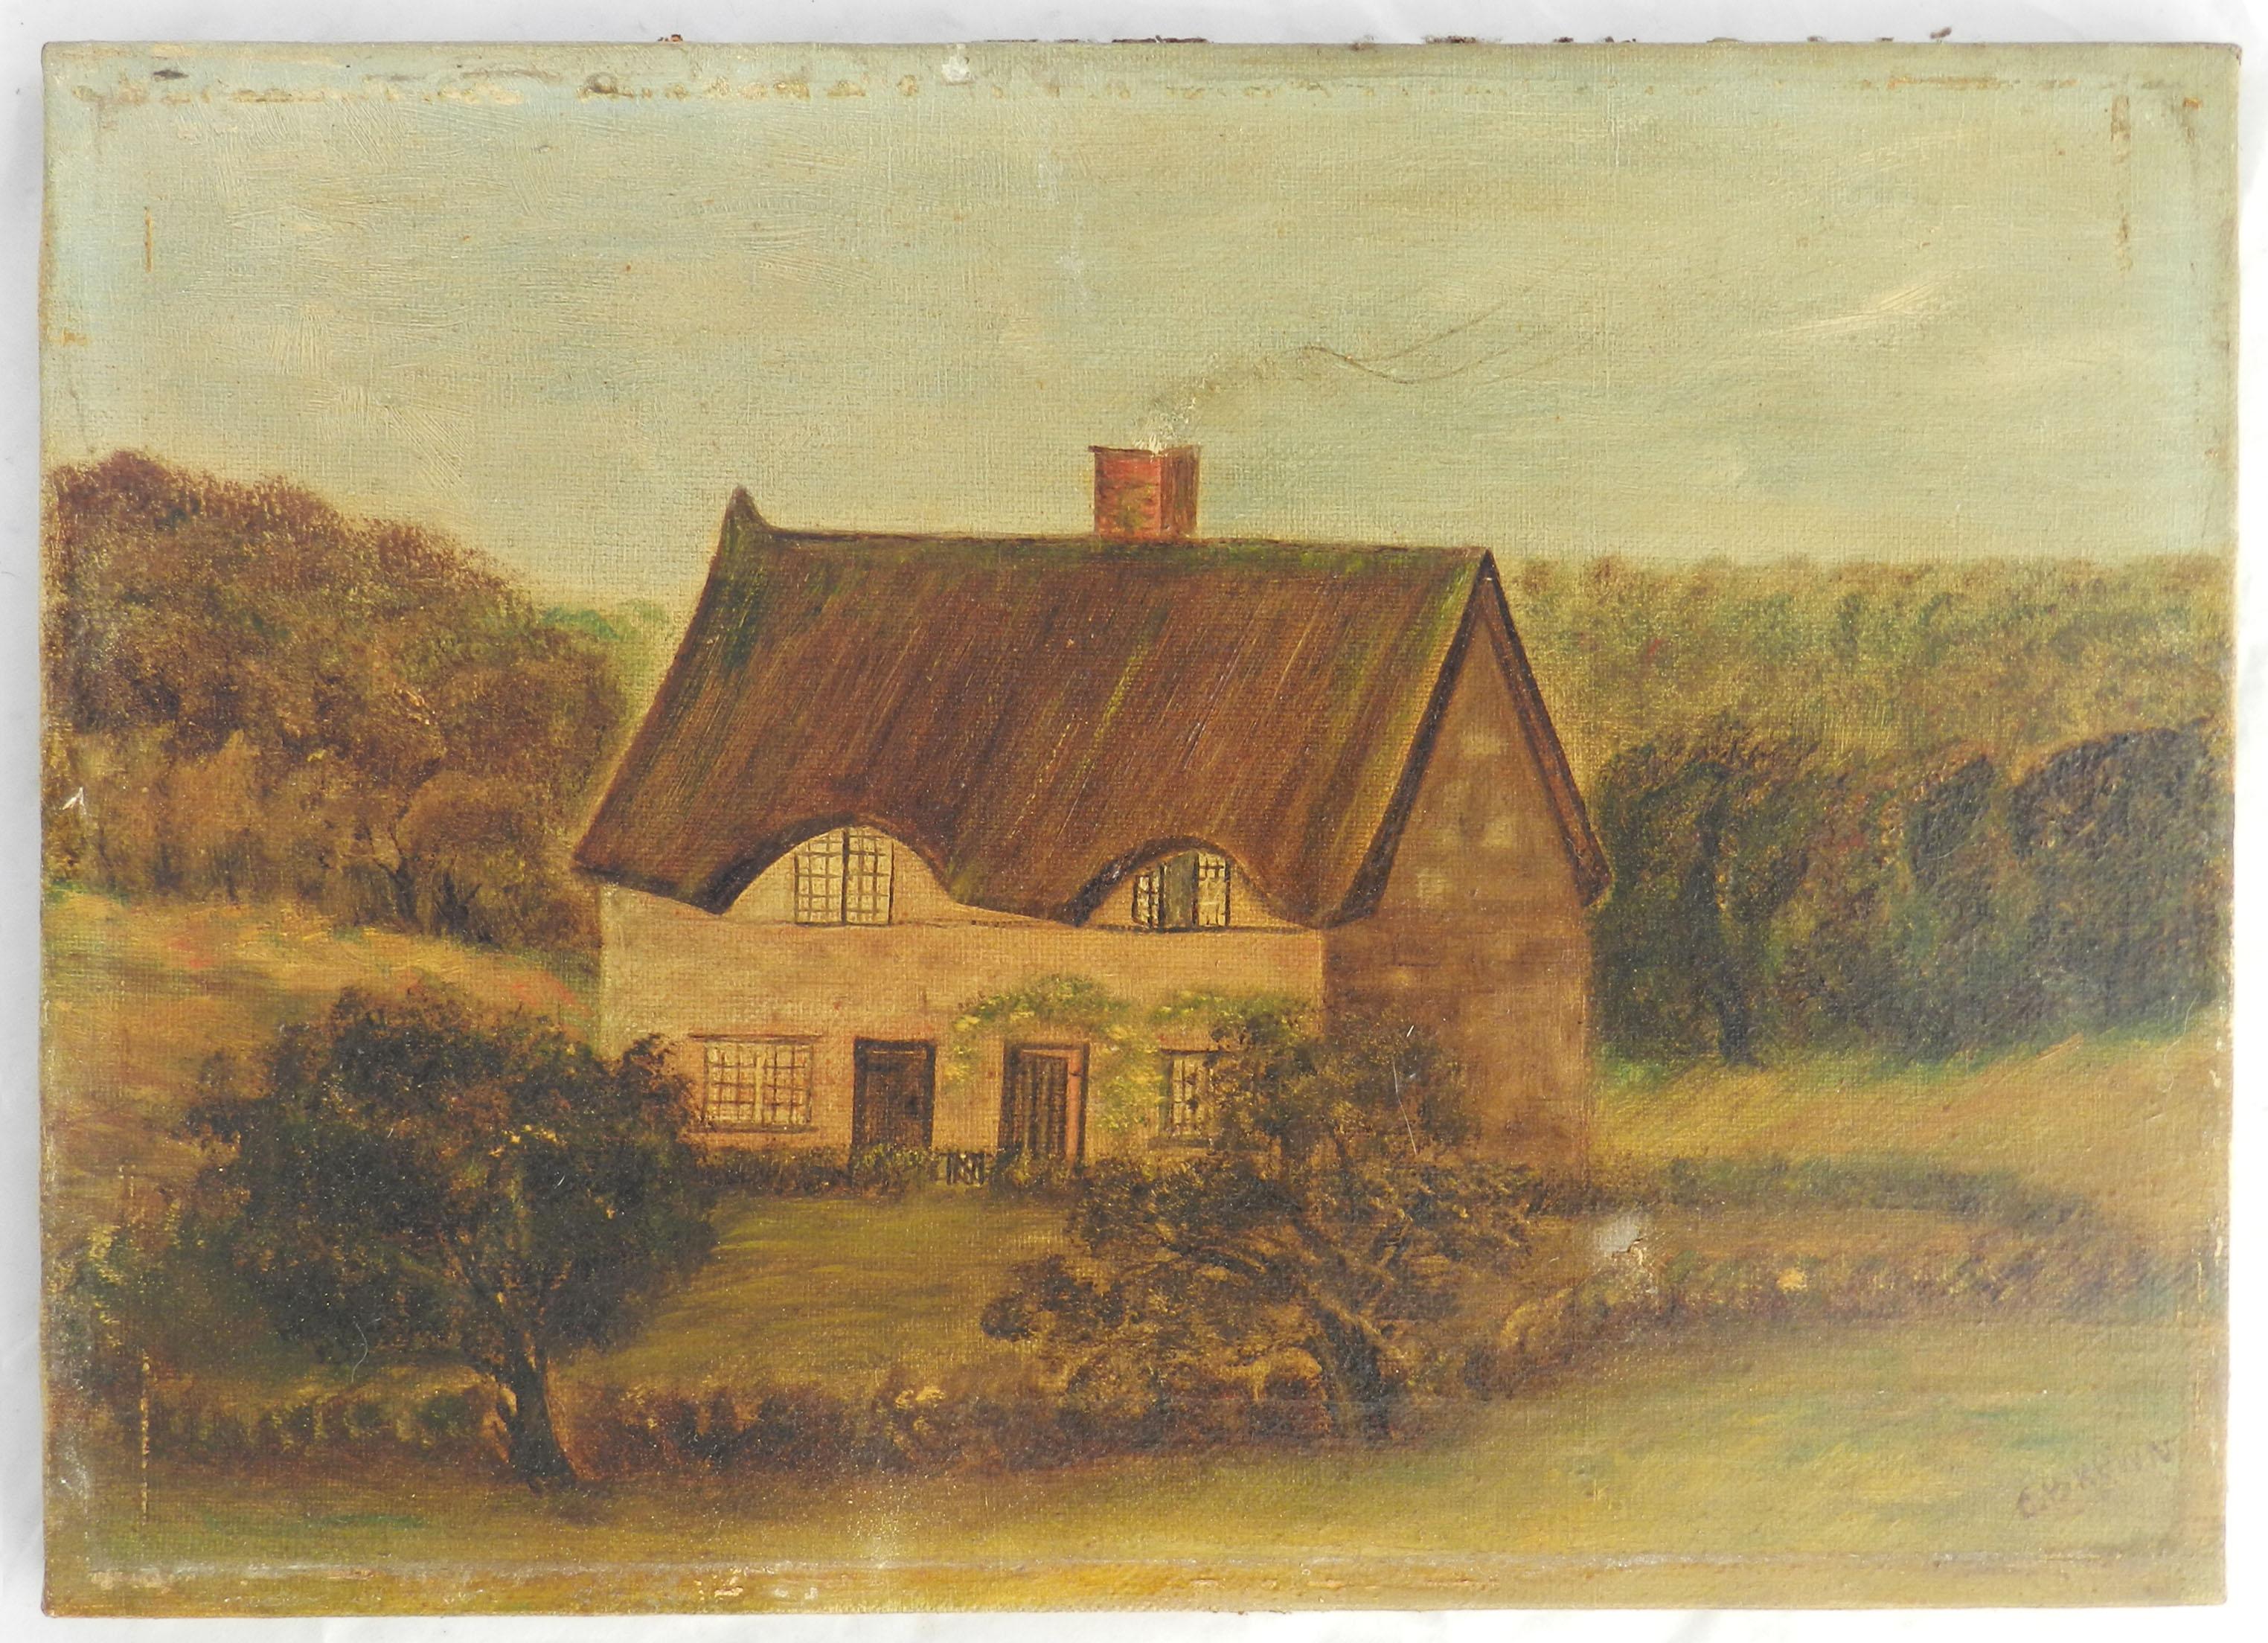 19ème siècle Naïf d'une maison à la campagne 
Signé C Brown
Huile sur toile retirée de son cadre d'origine 
Bon avec des marques mineures dues à l'âge et une très petite marque sur la toile, pas tout à fait un trou, comme indiqué 




